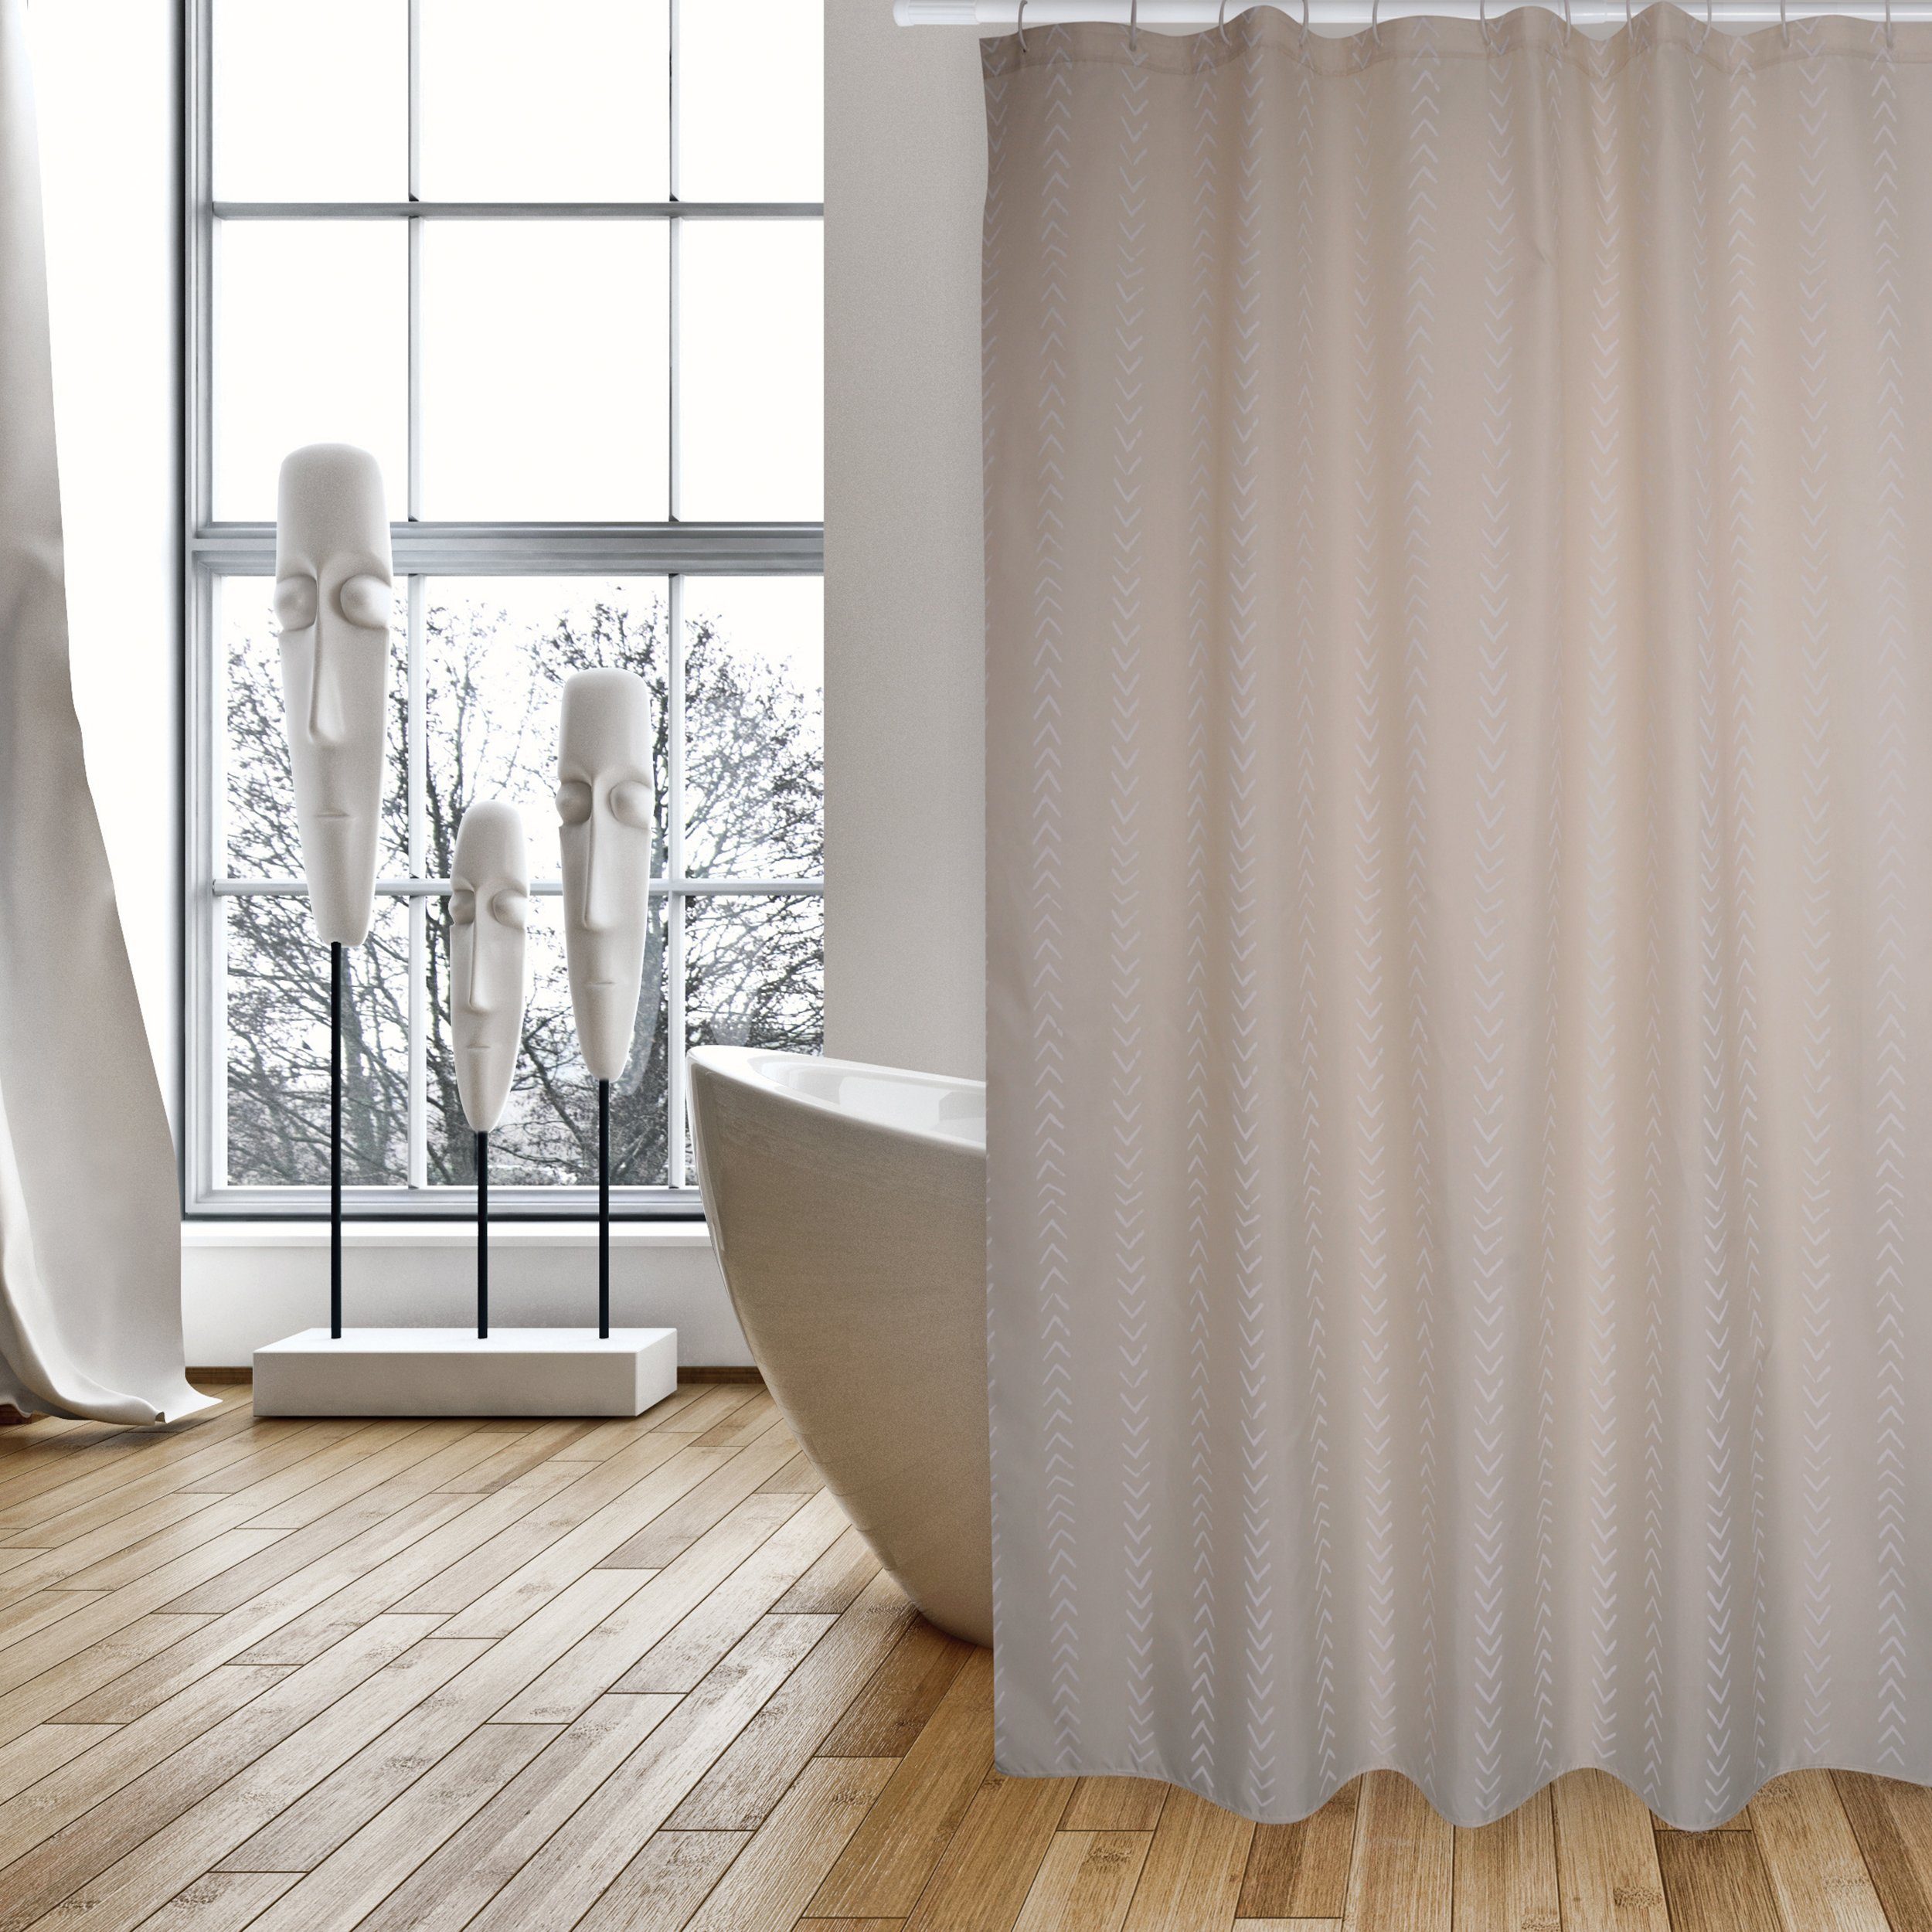 MSV Duschvorhang BERBERA Breite 180 cm, Premium Anti-Schimmel Textil- Duschvorhang, Polyester, 180x200 cm, waschbar, beige-braun, gemustert